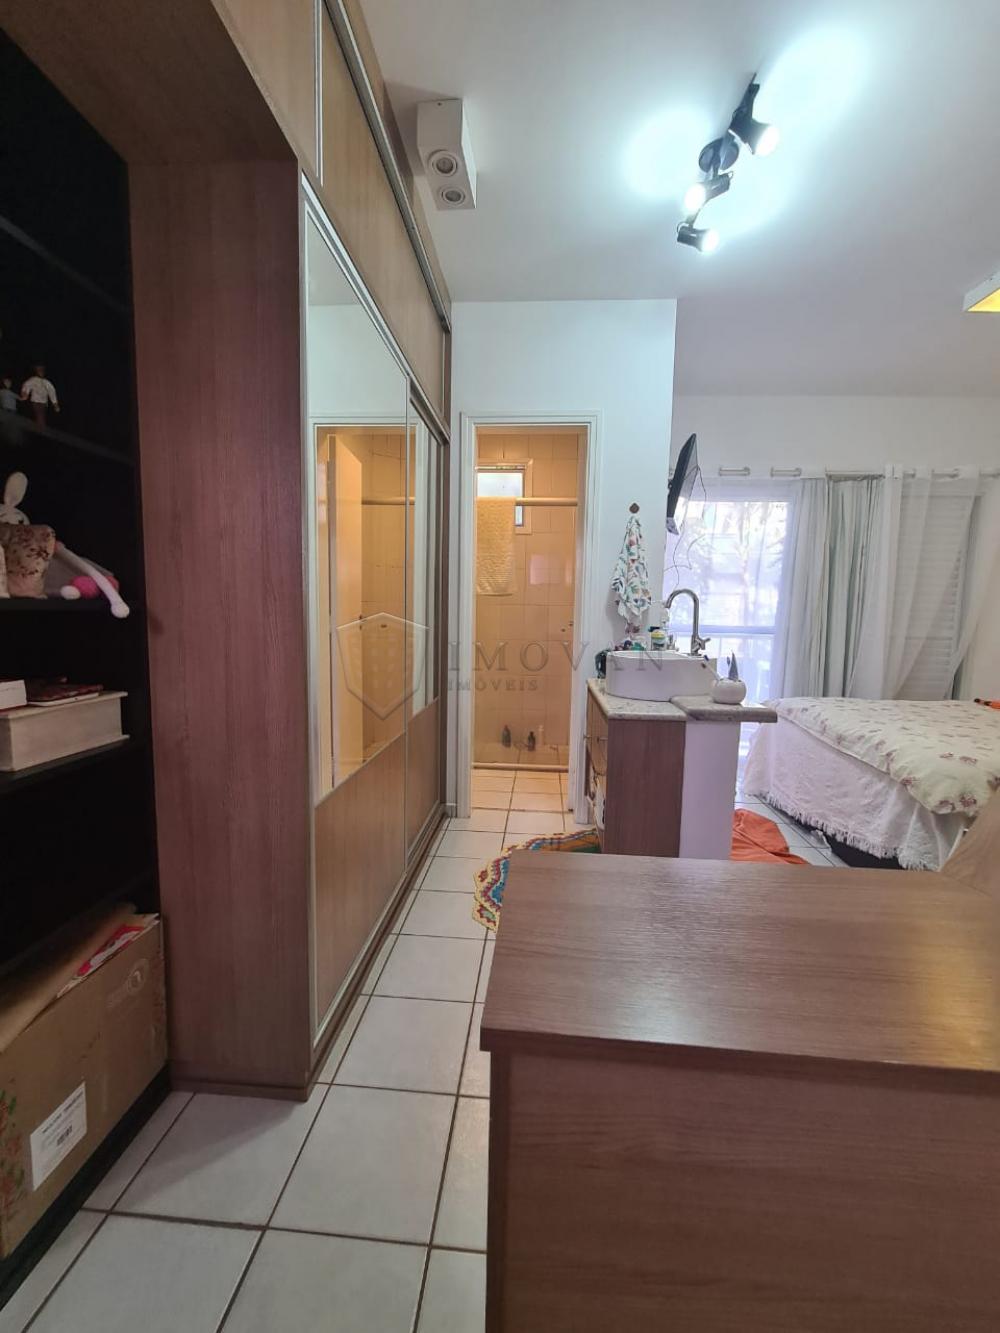 Alugar Apartamento / Duplex em Ribeirão Preto R$ 1.700,00 - Foto 7